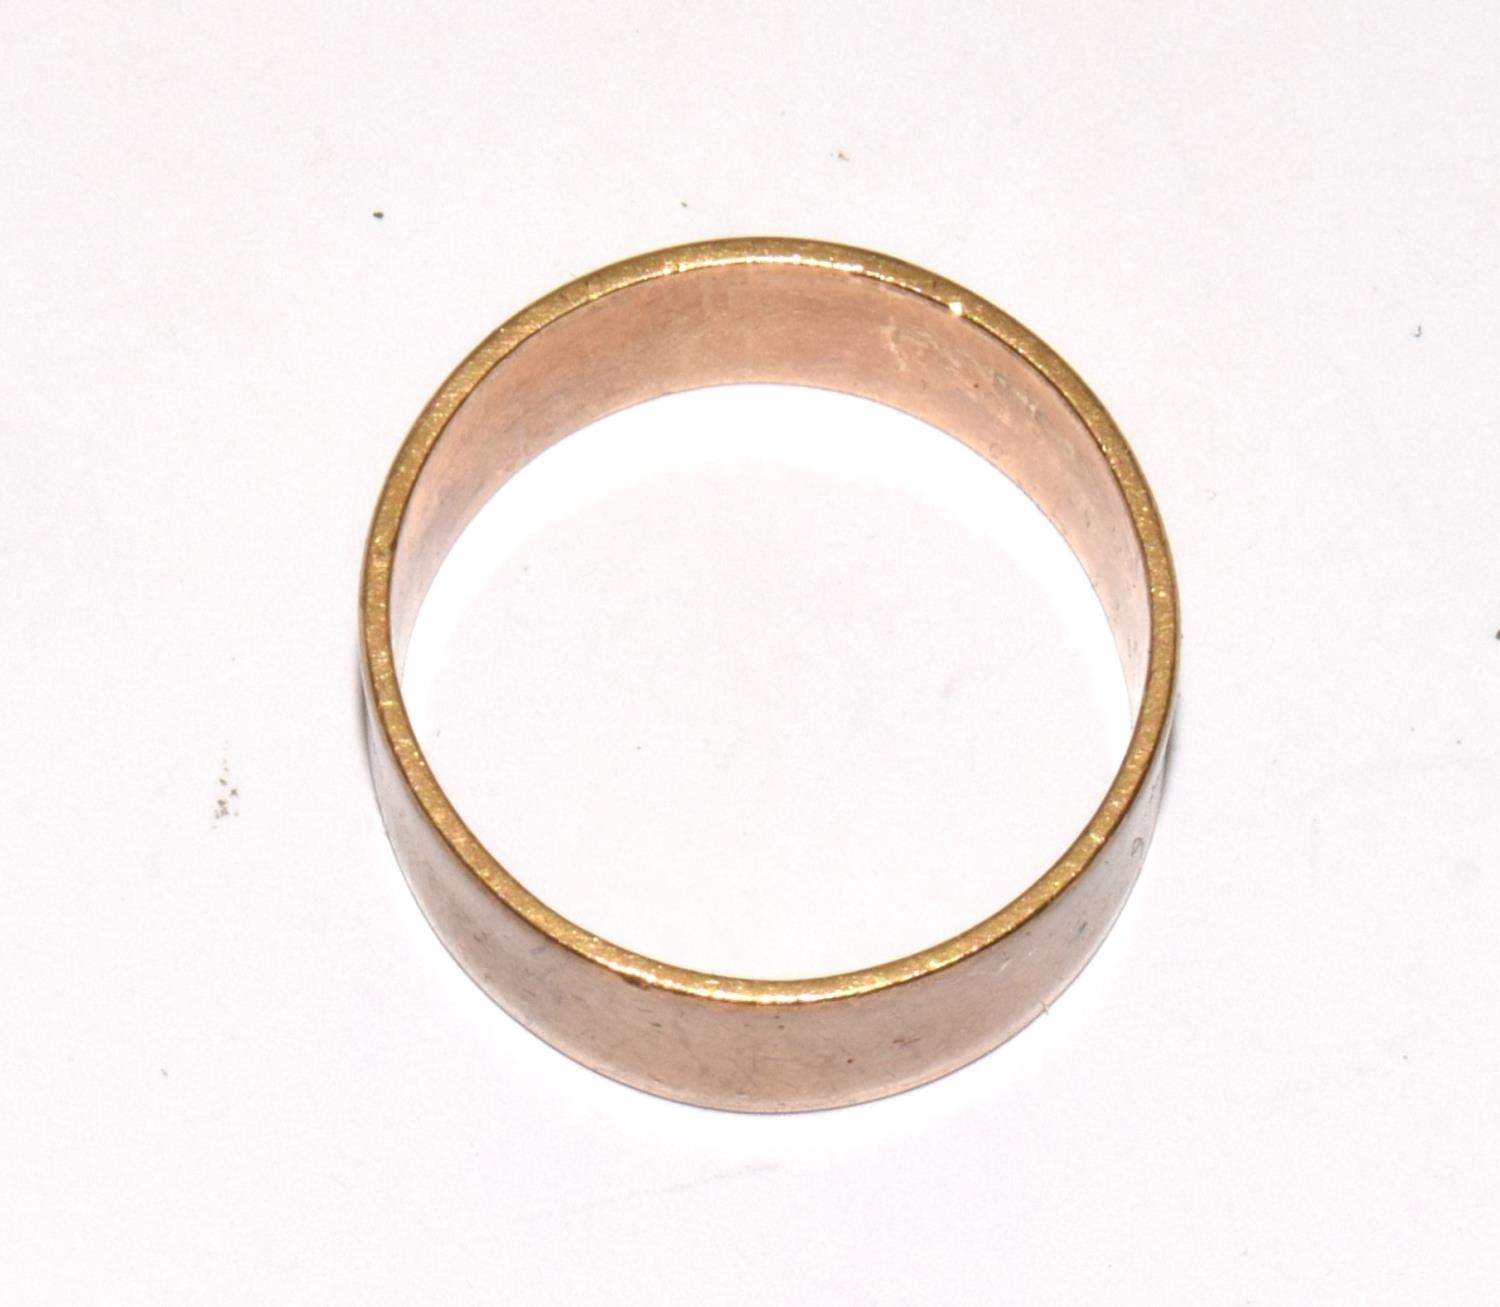 9ct gold good size wedding band 7.2g size V - Image 2 of 3